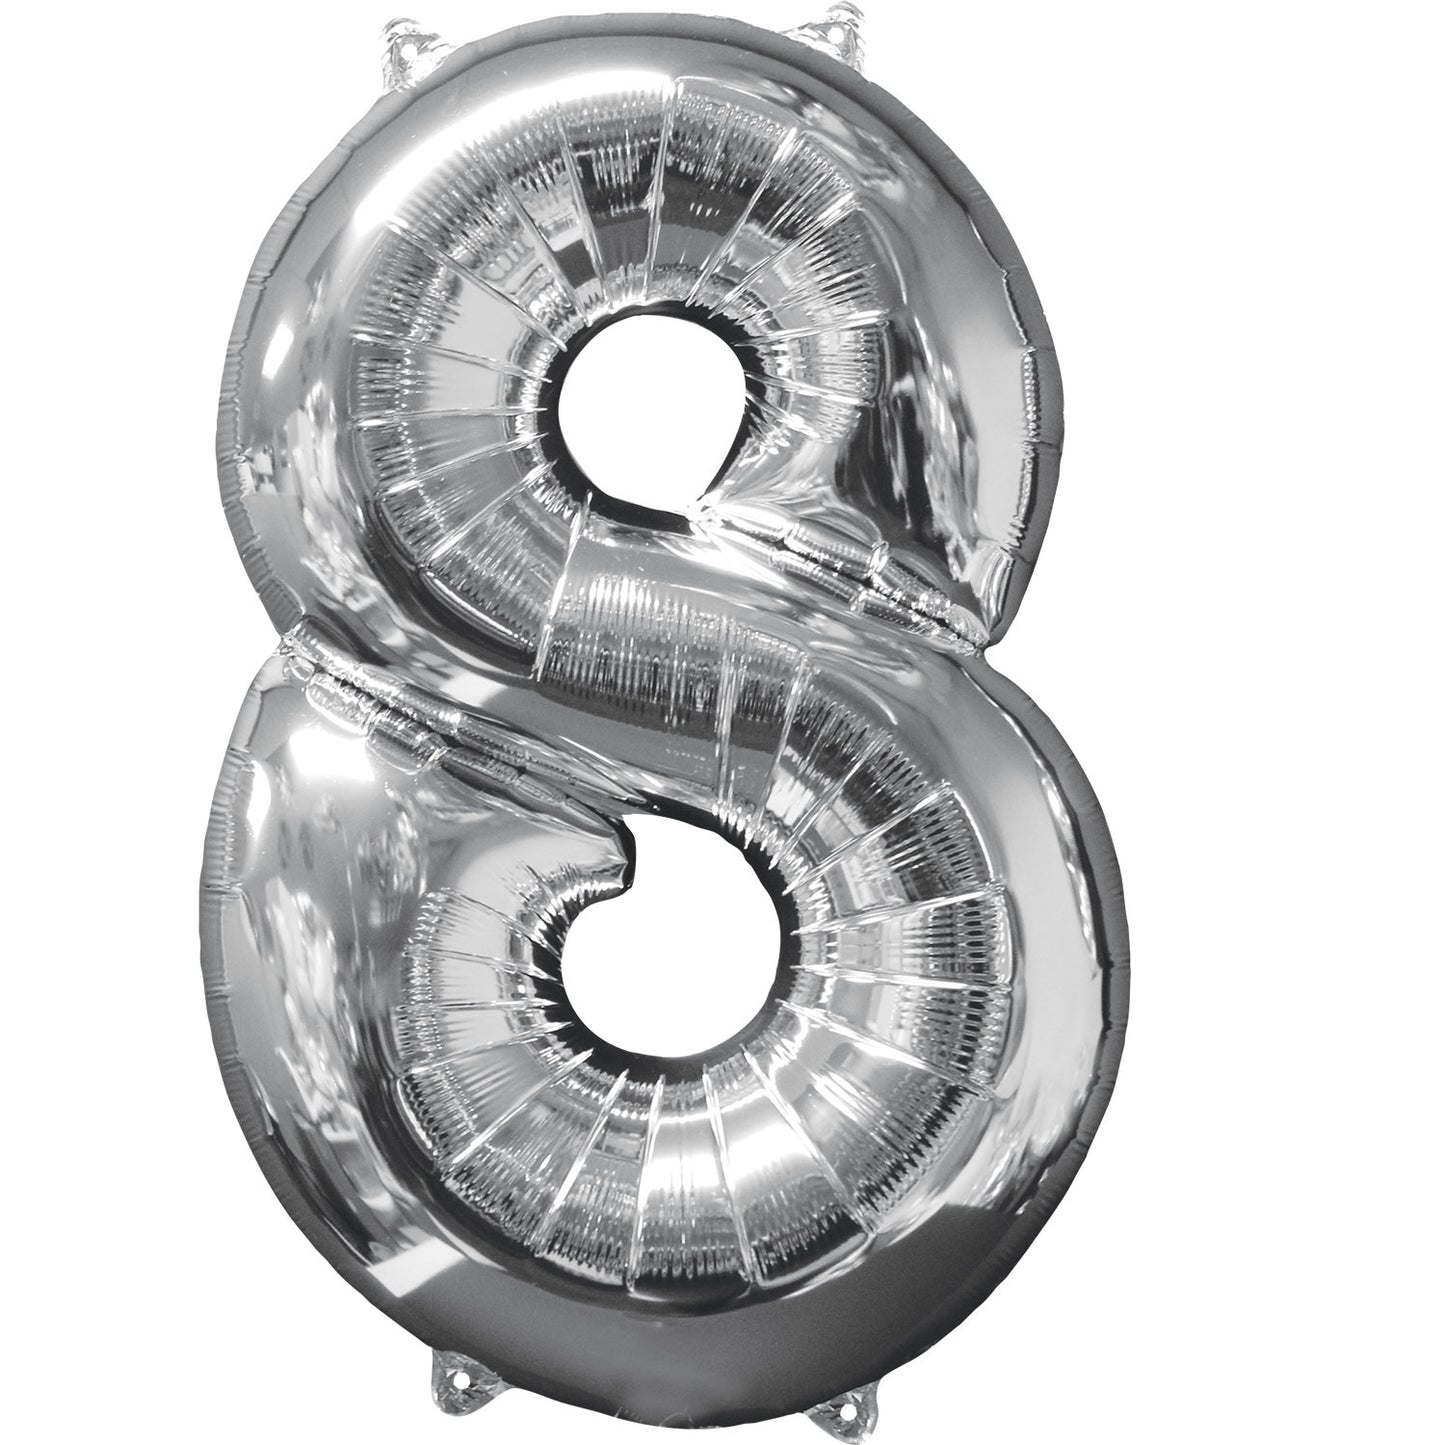 Number 8 Silver SuperShape Mid-Size XL Foil Balloons 18"/45cm w x 26"/66cm h P31 - 1 PC